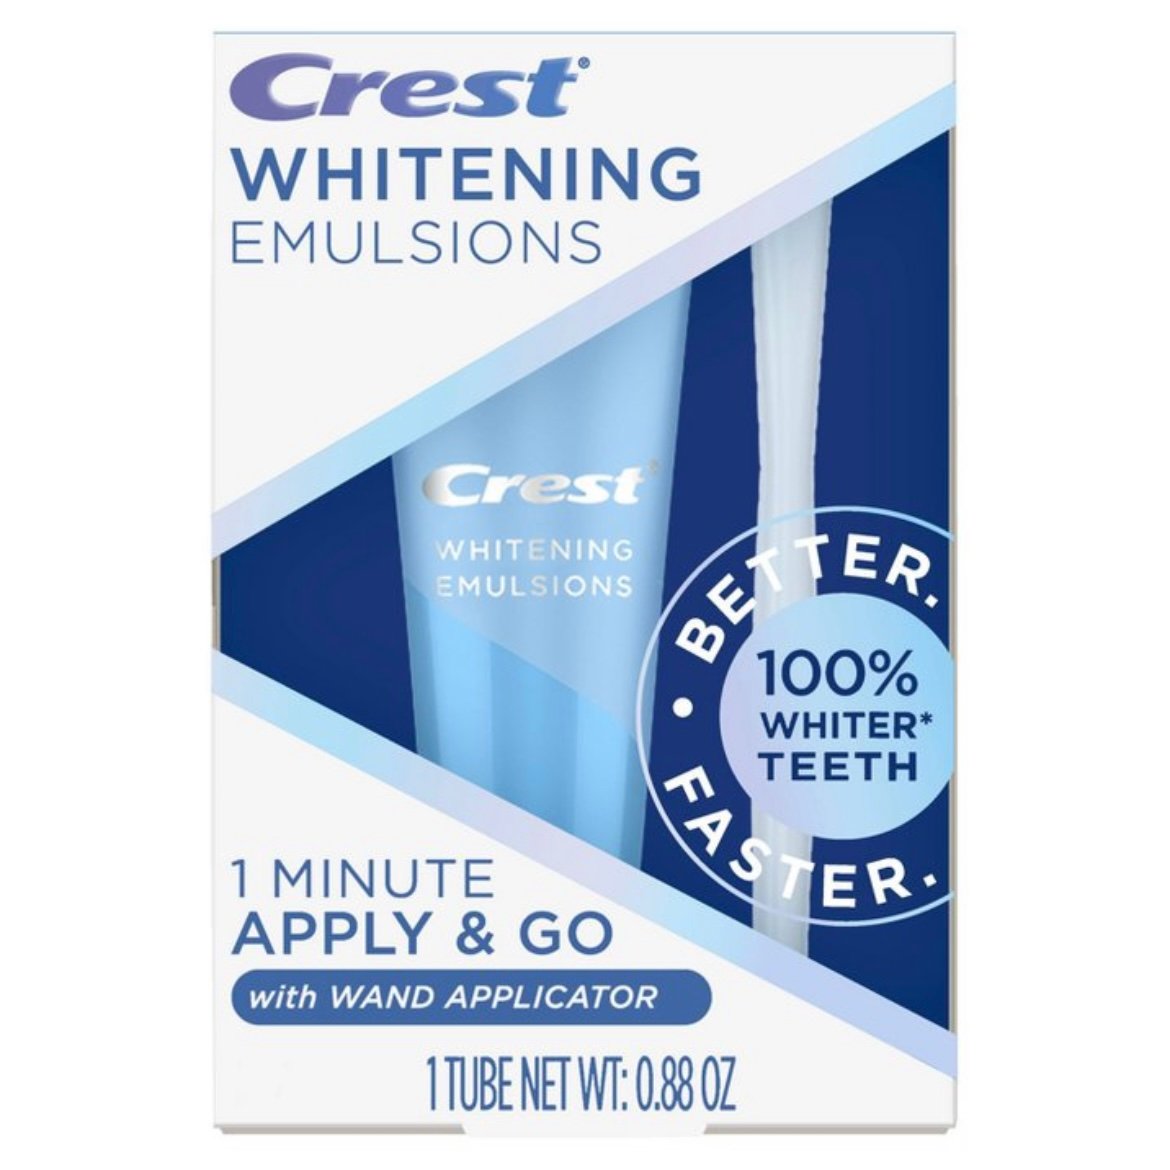 Crest Whitening Emulsions 1 Minute Apply & Go Leave-On 